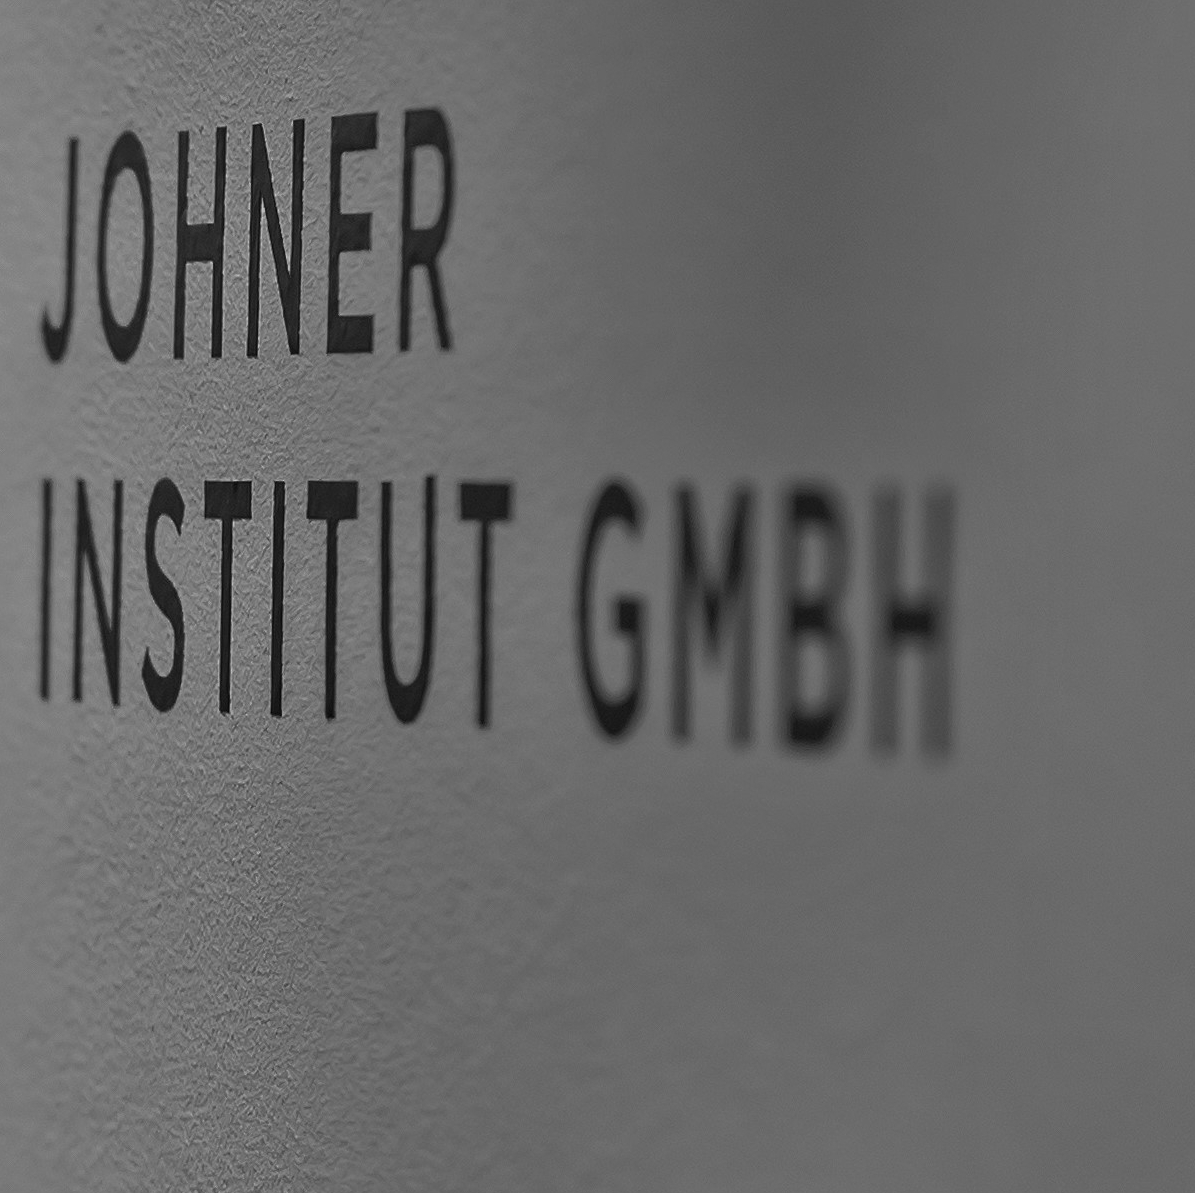 Johner Institut GmbH